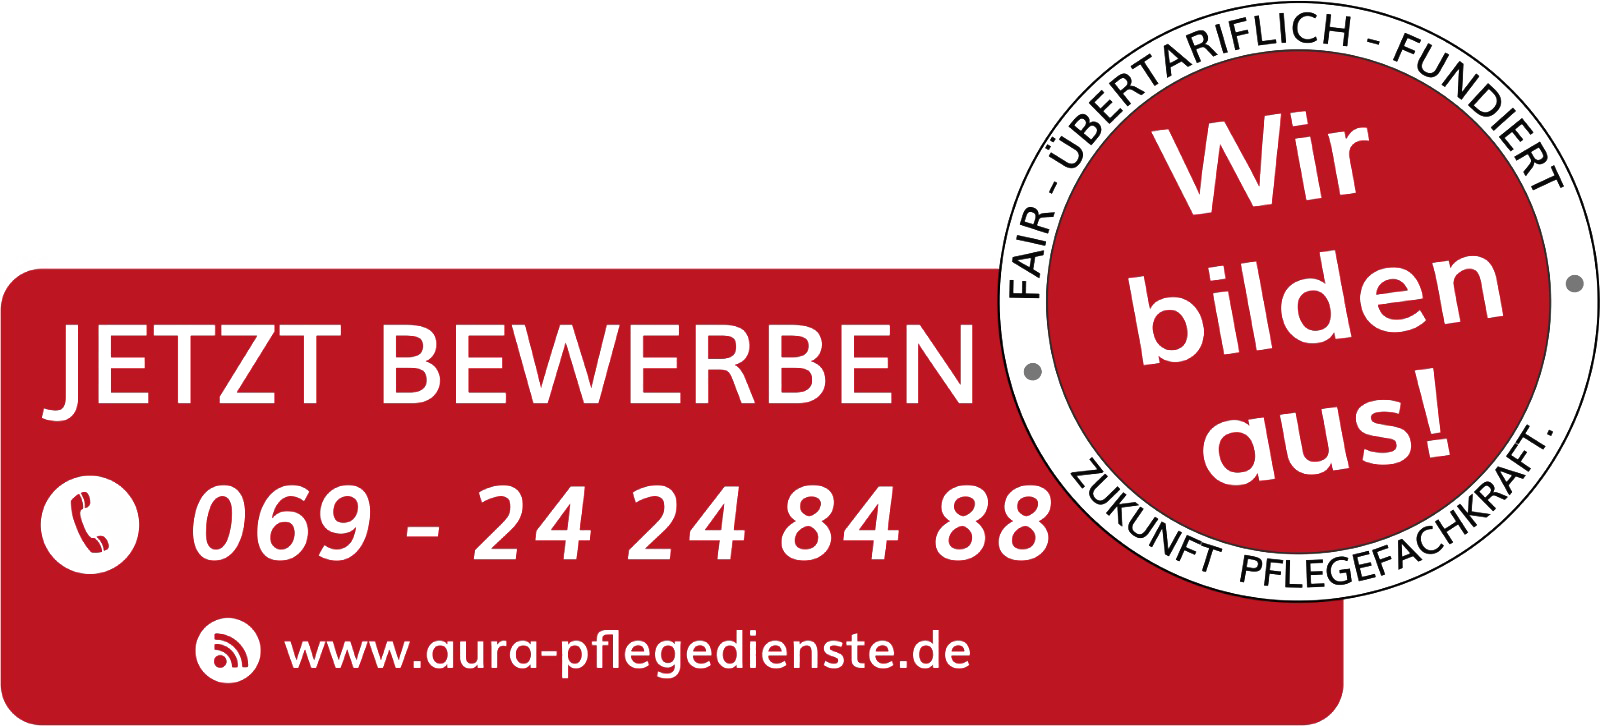 Aura Pflegedienst GmbH